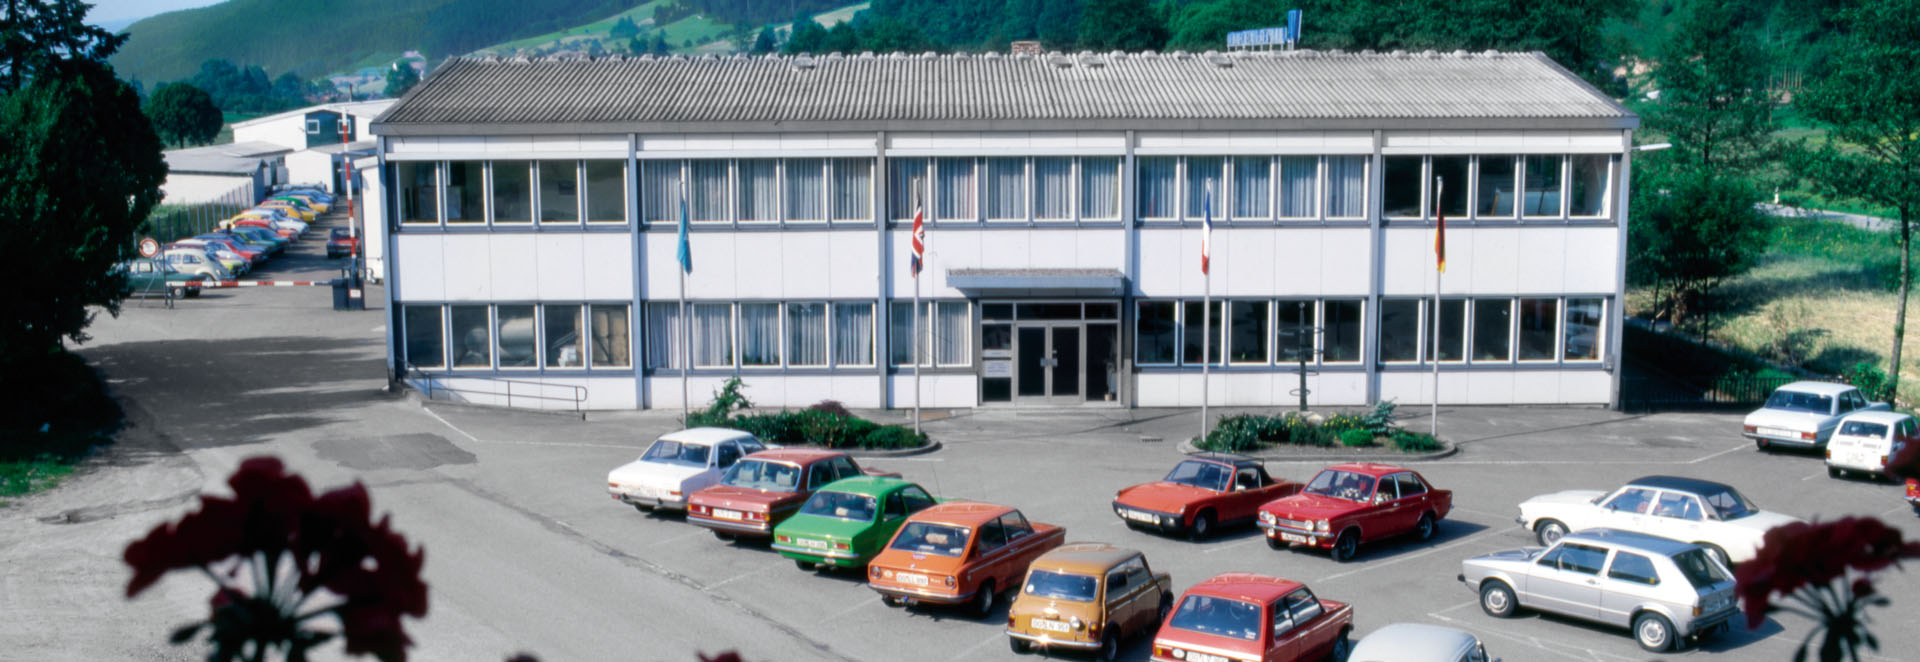 60 Jahre Erwin Junker Maschinenfabrik GmbH